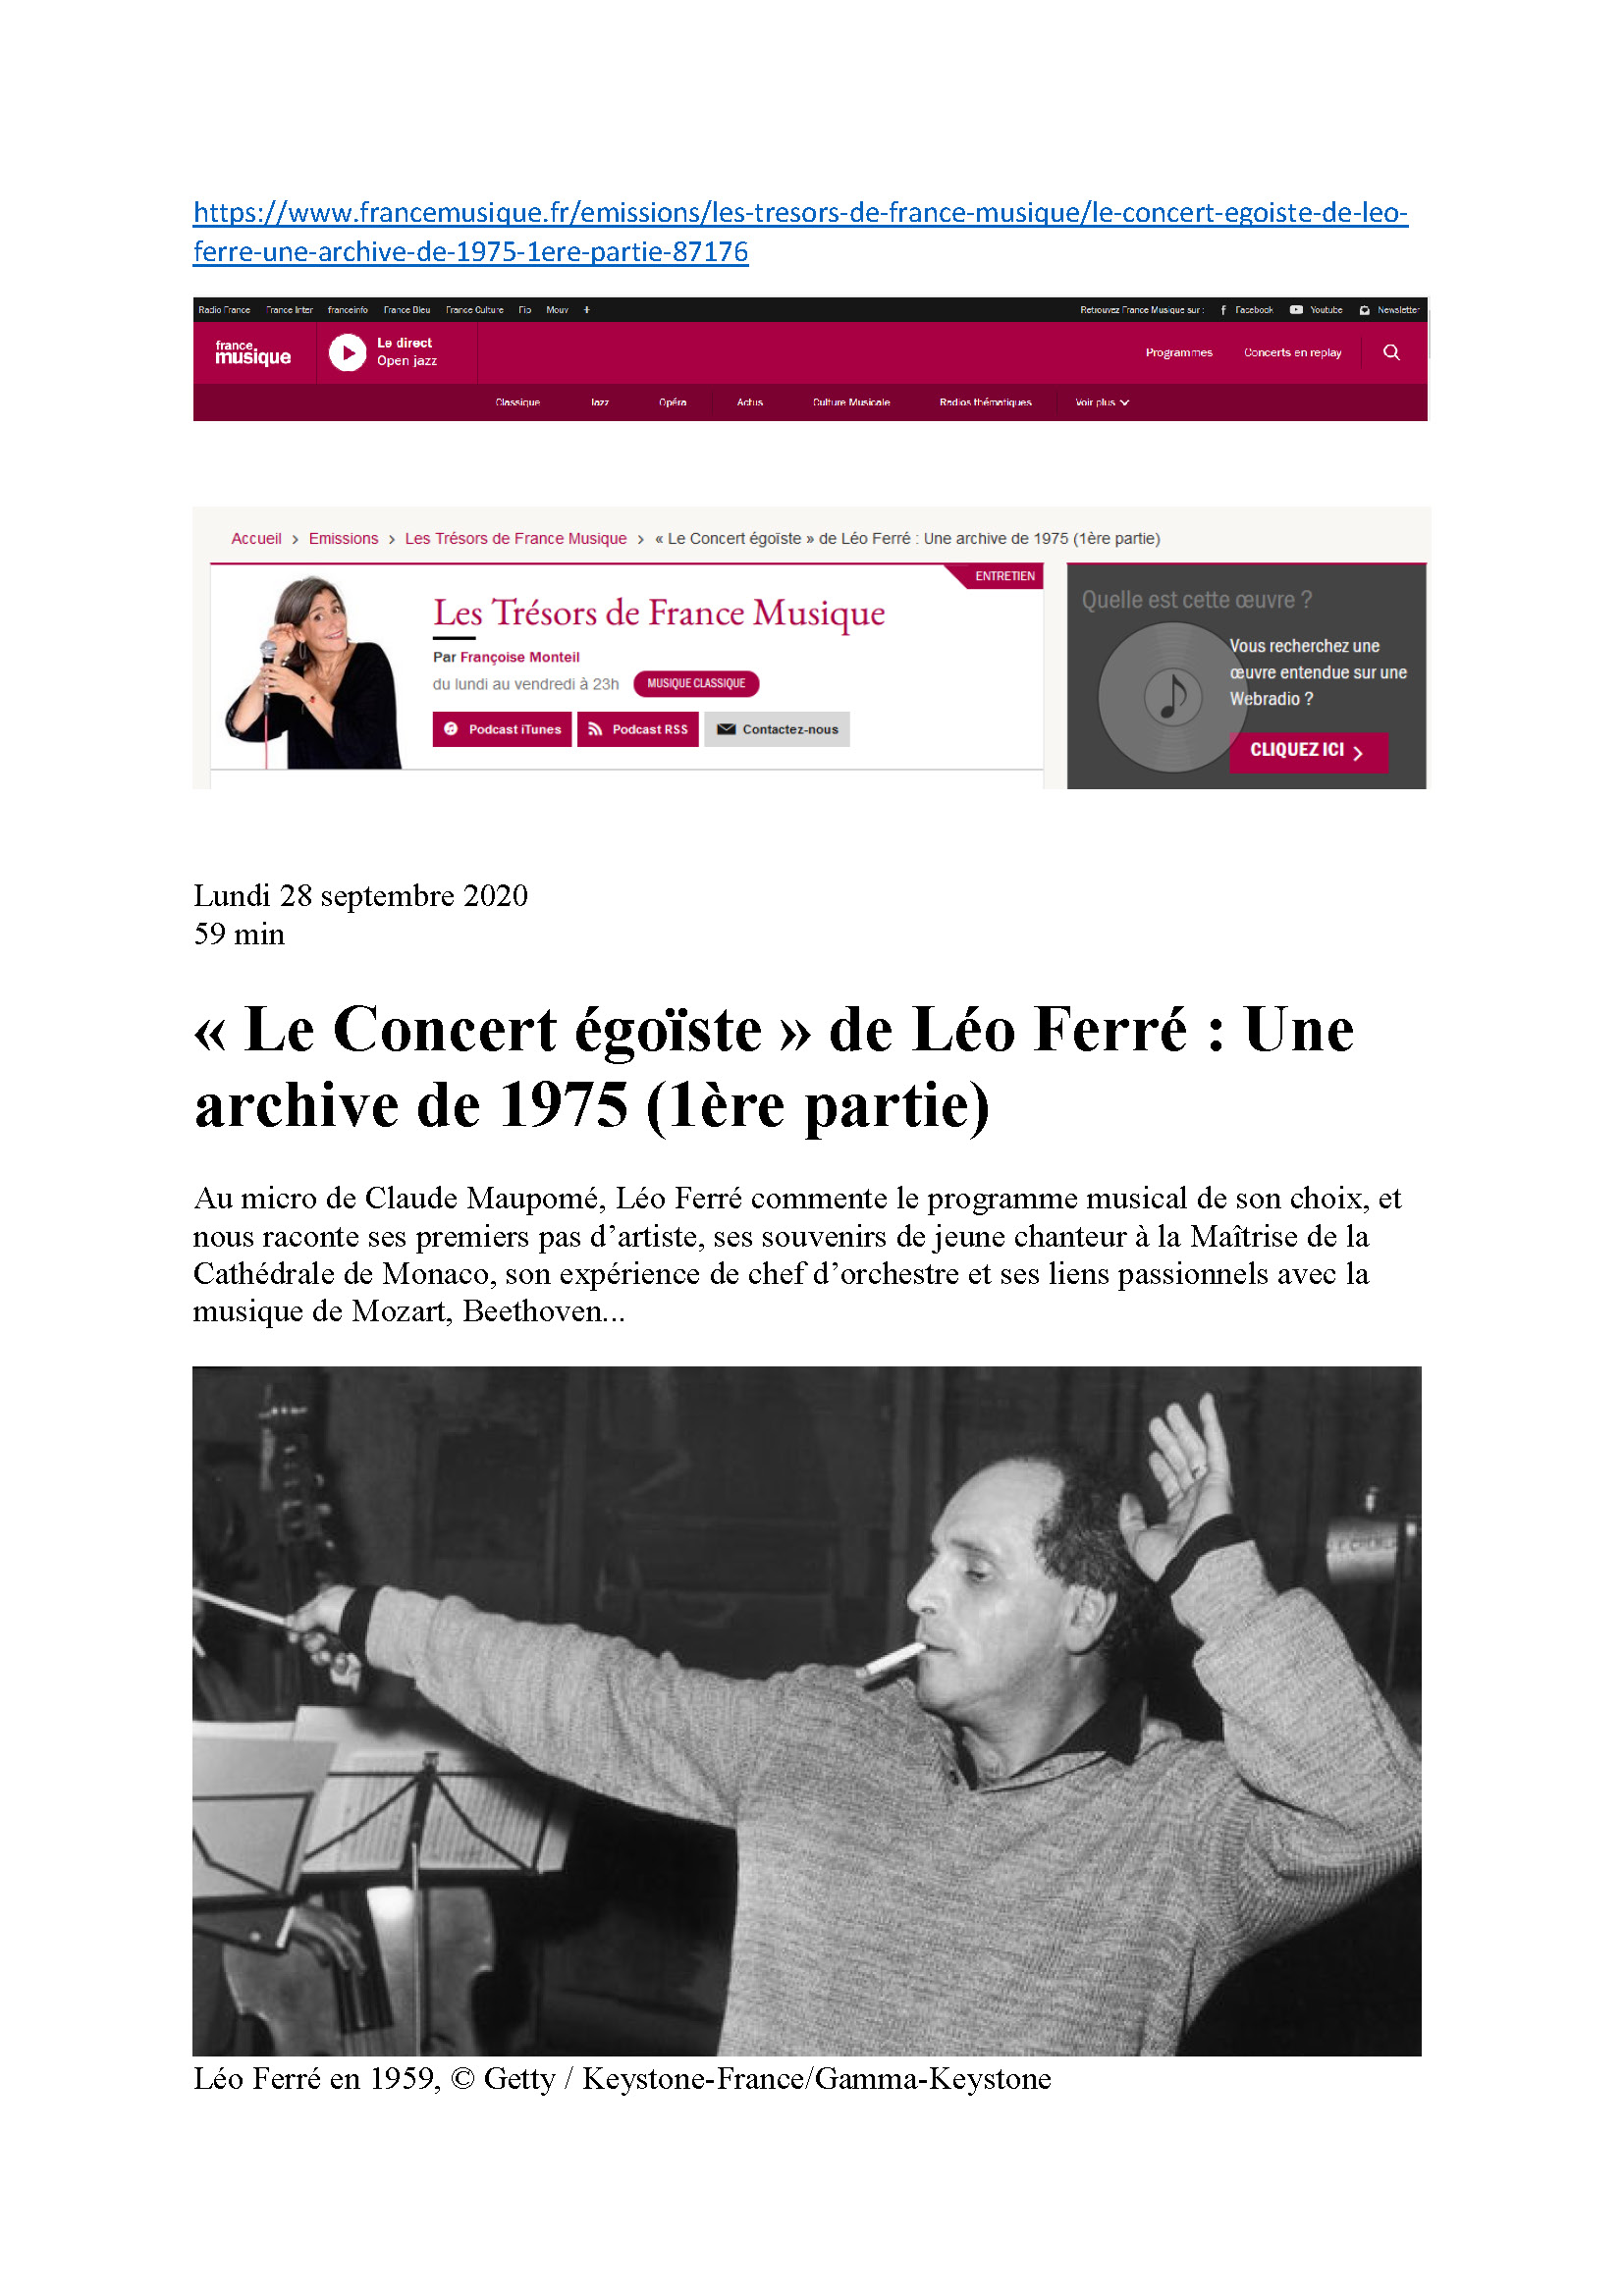 28/09/2020 Les trésors de france musique le concert égoïste Léo Ferré ère partie